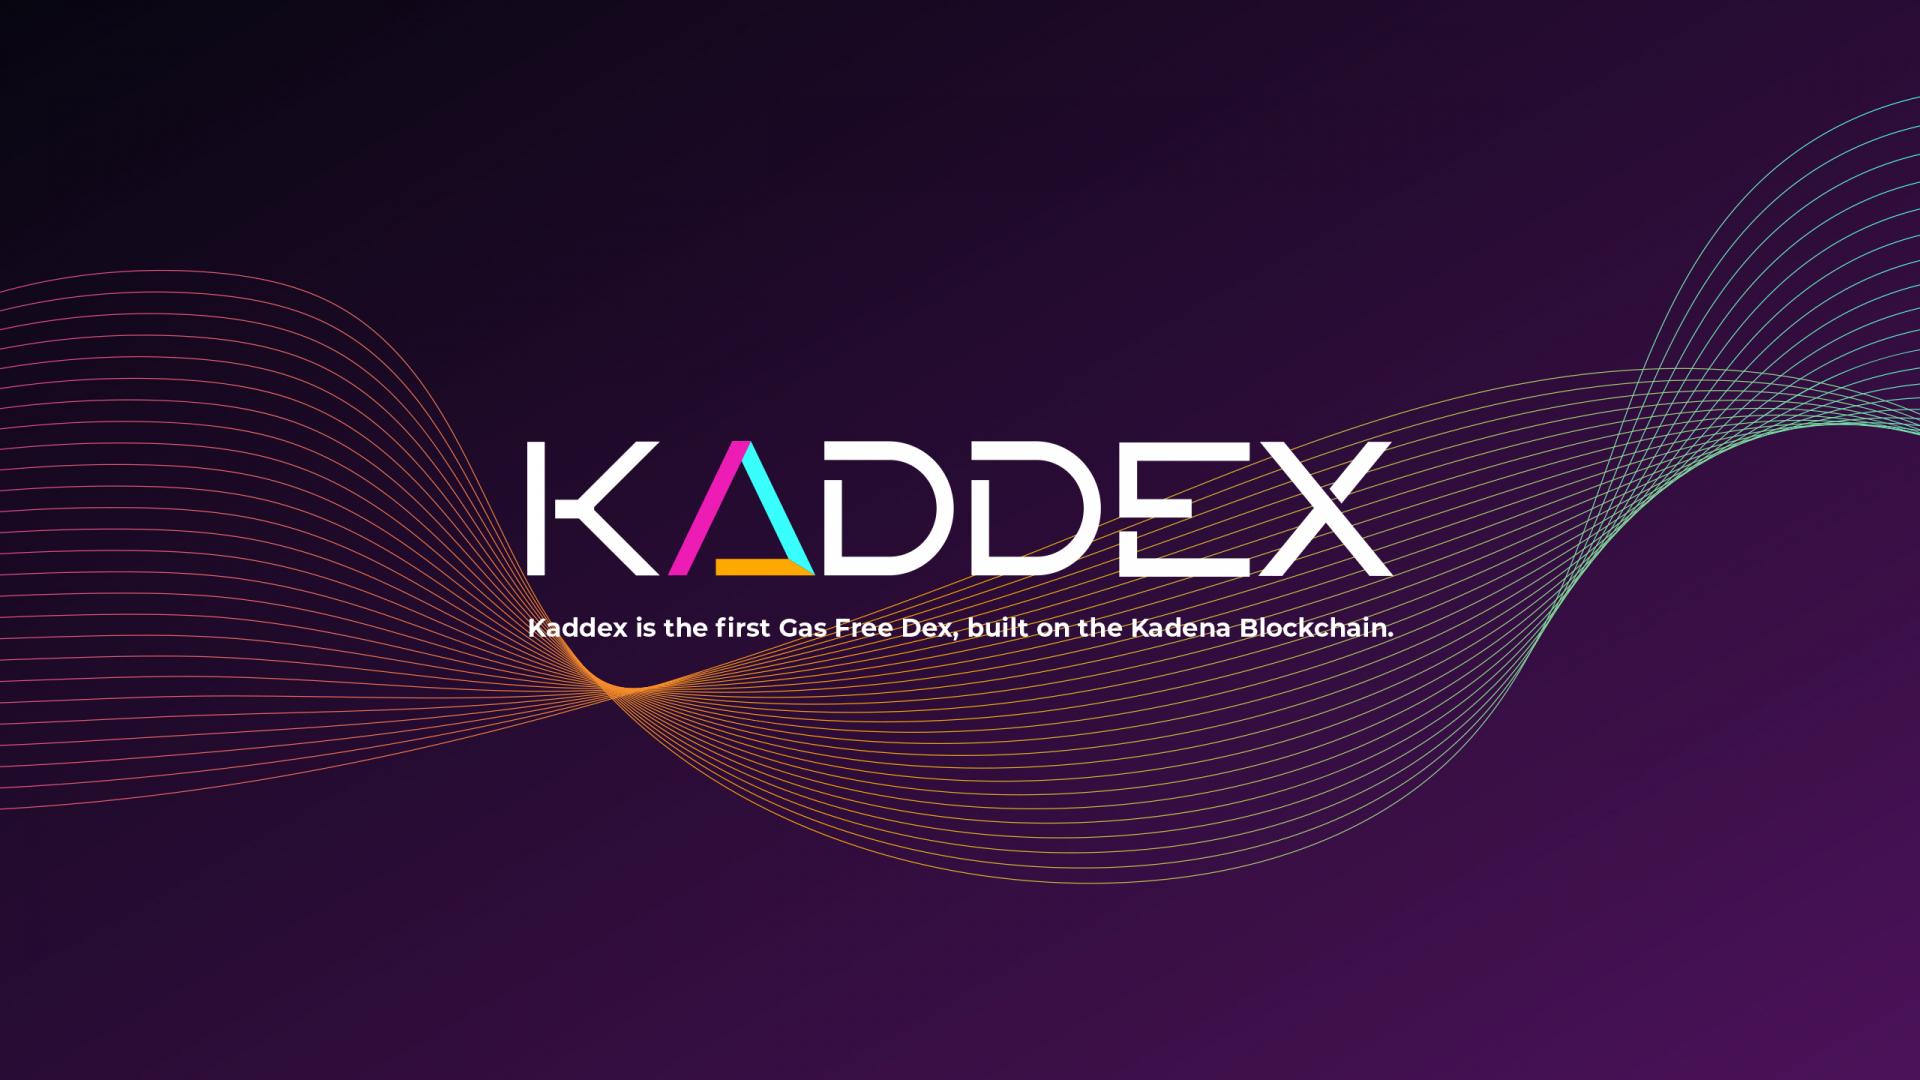 Kdx crypto mining bitcoins cloud based